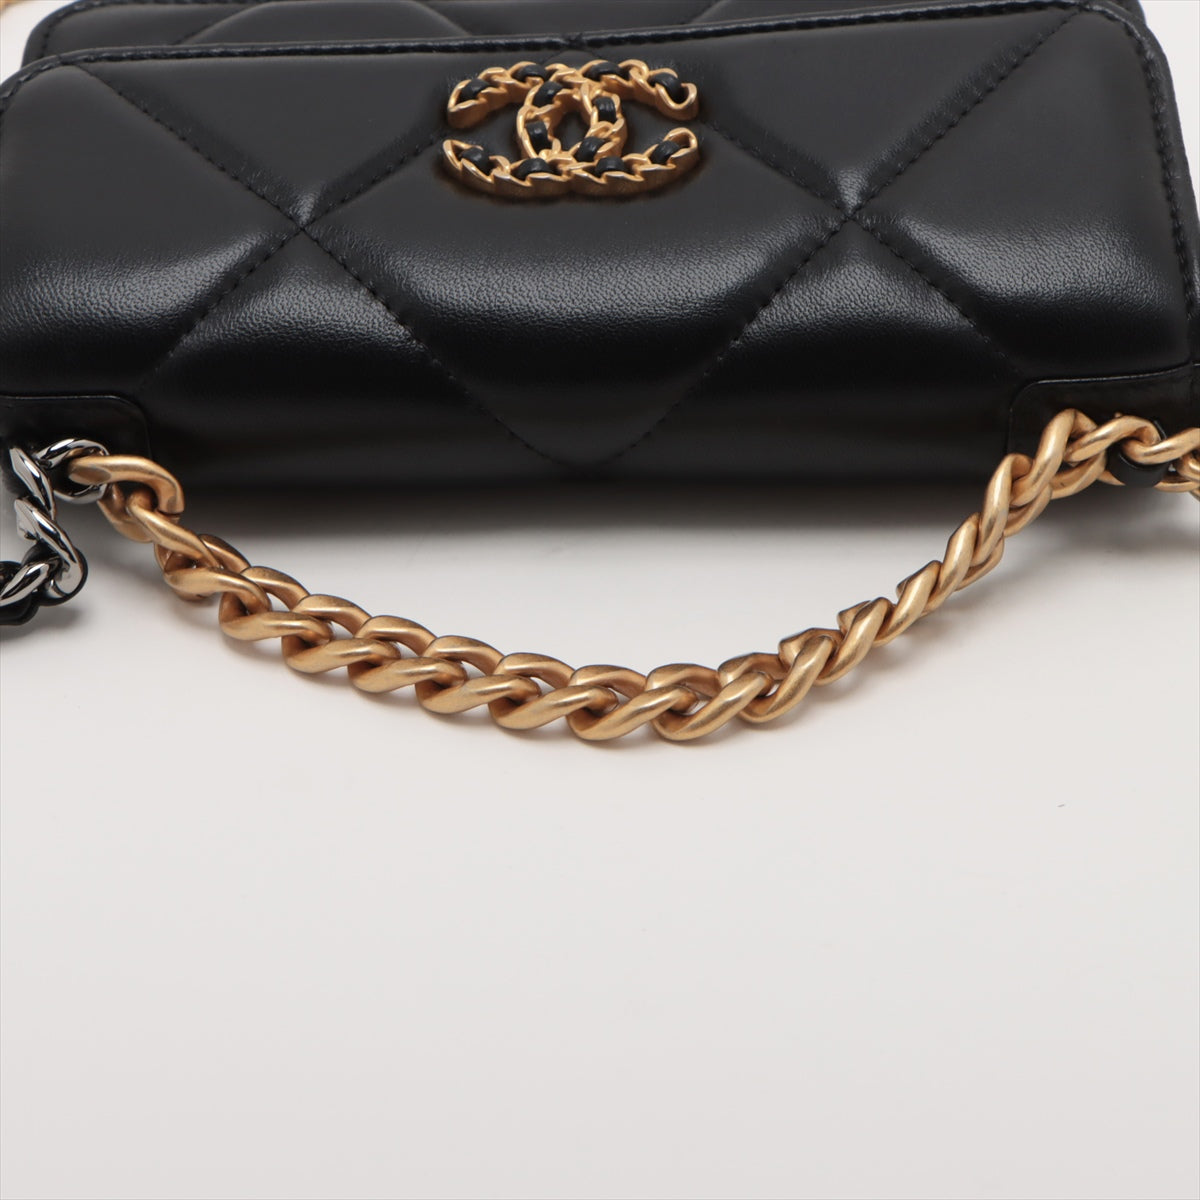 Chanel CHANEL 19 Lambskin Chain wallet Black Gold x silver metal fittings